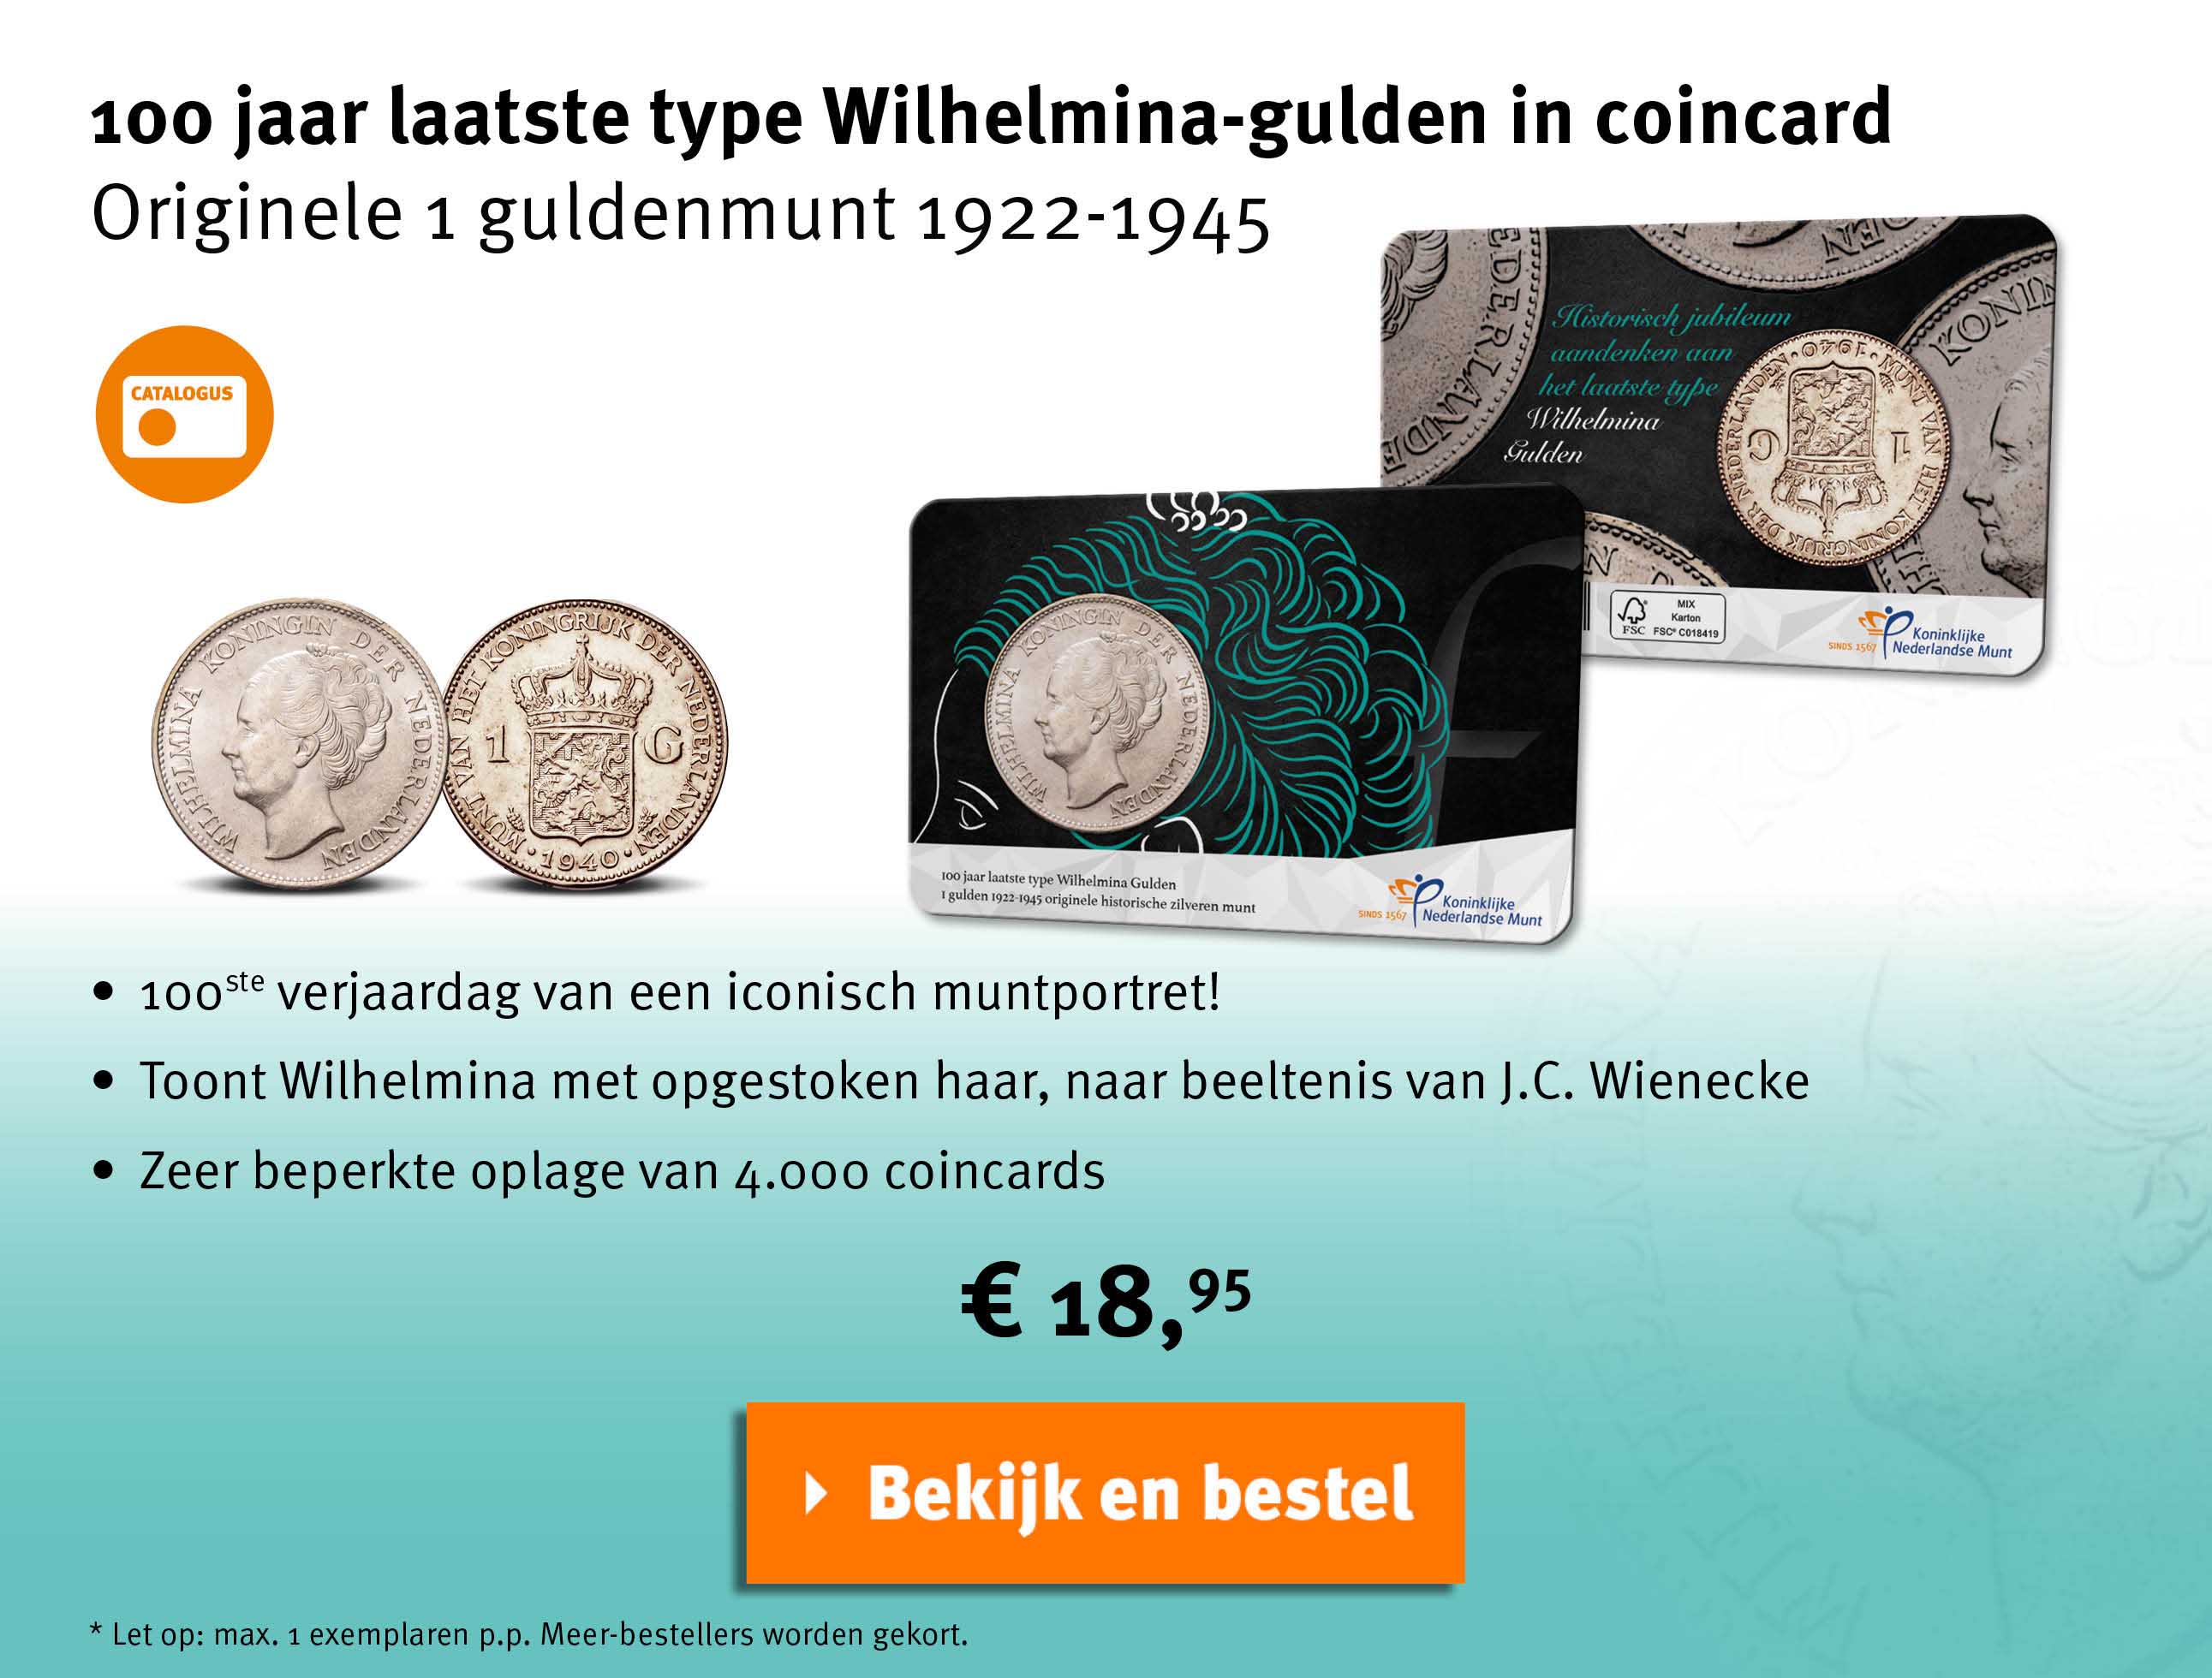 Bekijk en bestel: Numismatische Coincard Wilhelmina.gukden